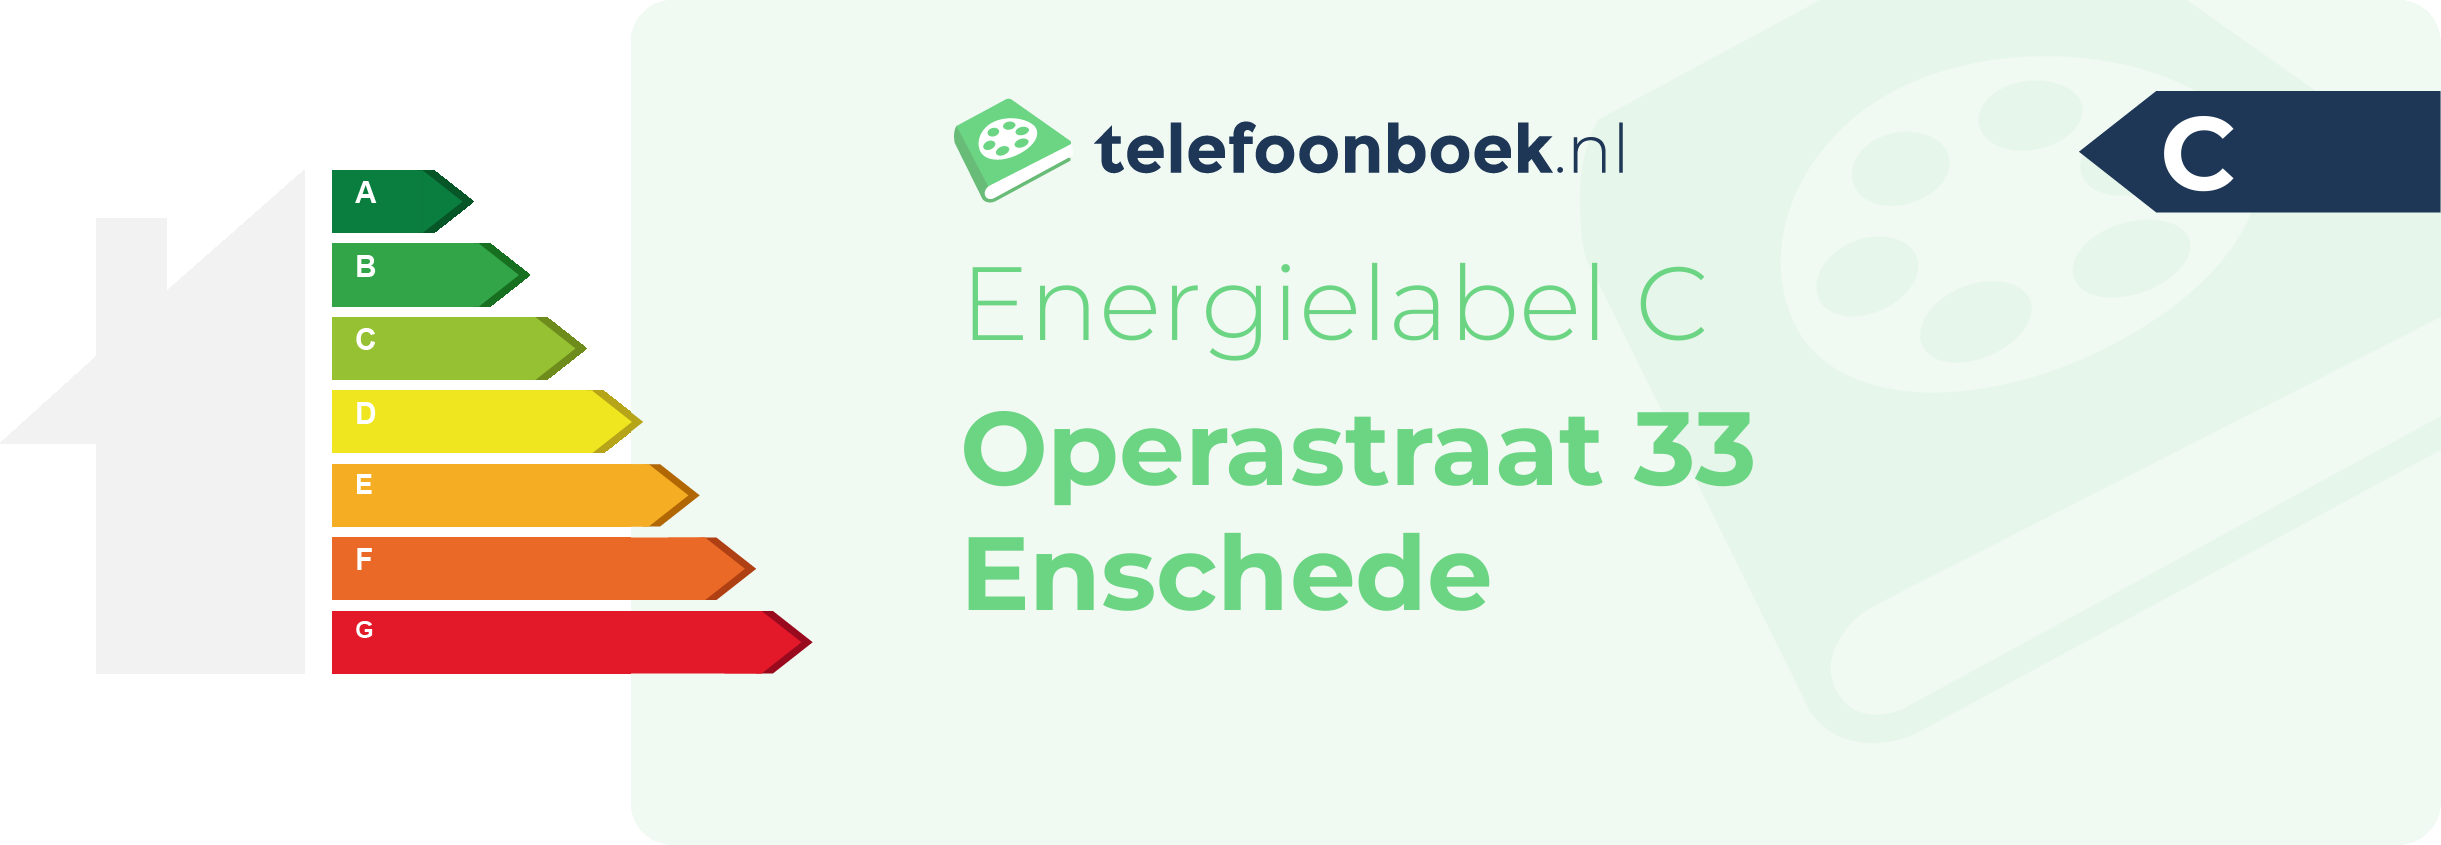 Energielabel Operastraat 33 Enschede